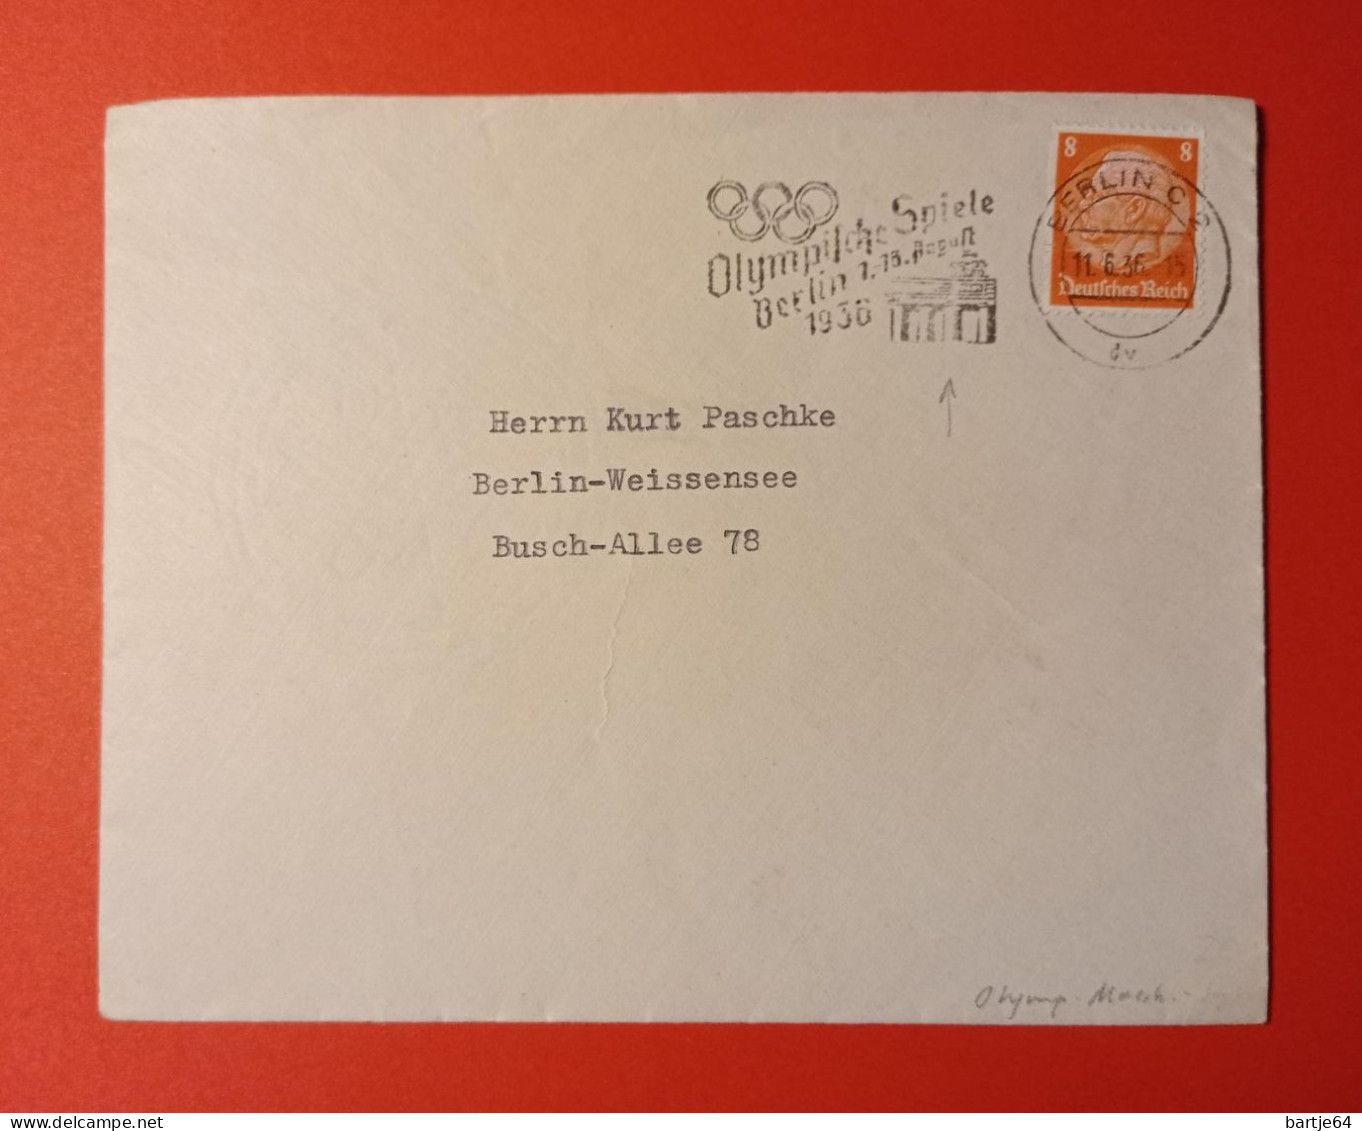 1936 DDR - Letter - Ete 1936: Berlin